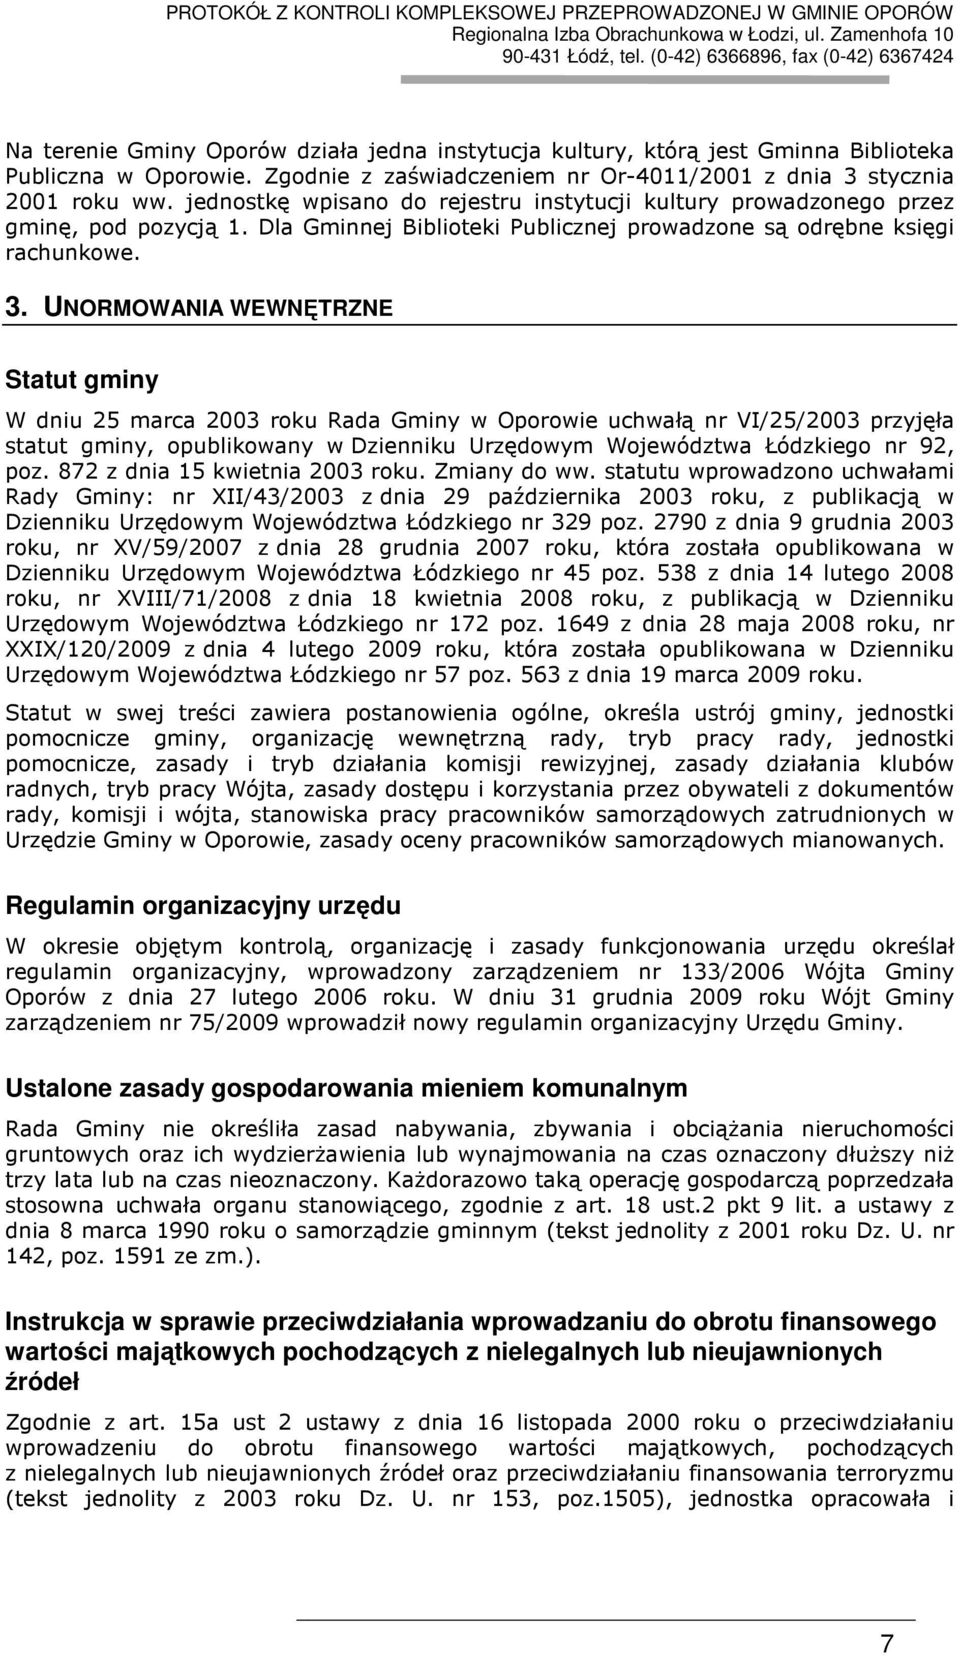 UNORMOWANIA WEWNĘTRZNE Statut gminy W dniu 25 marca 2003 roku Rada Gminy w Oporowie uchwałą nr VI/25/2003 przyjęła statut gminy, opublikowany w Dzienniku Urzędowym Województwa Łódzkiego nr 92, poz.